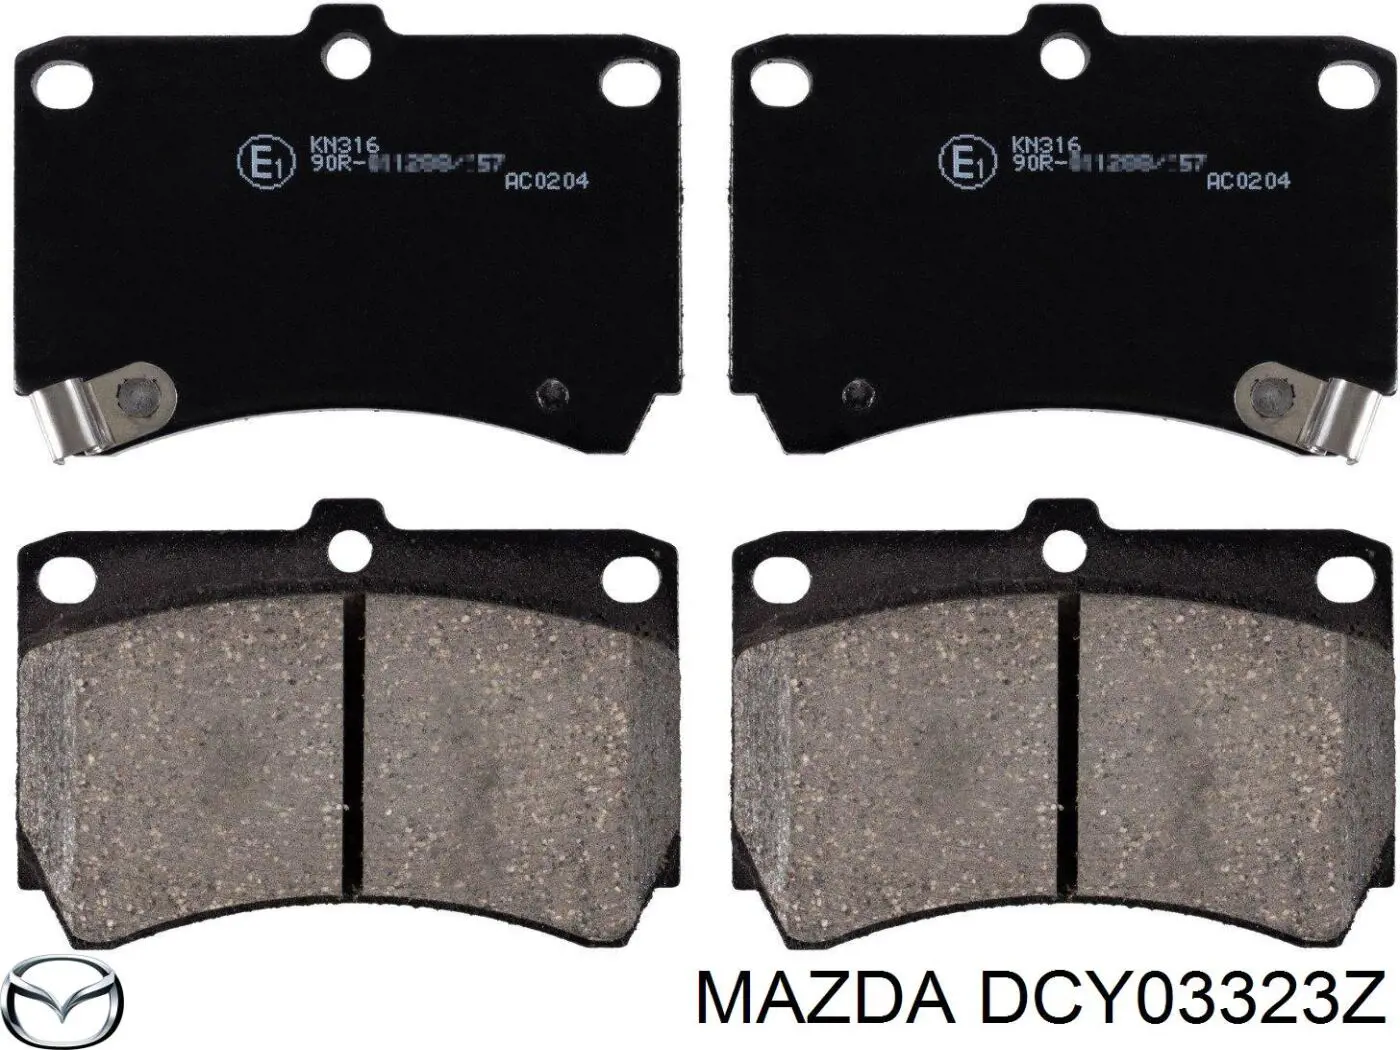 DCY03323Z Mazda pastillas de freno delanteras